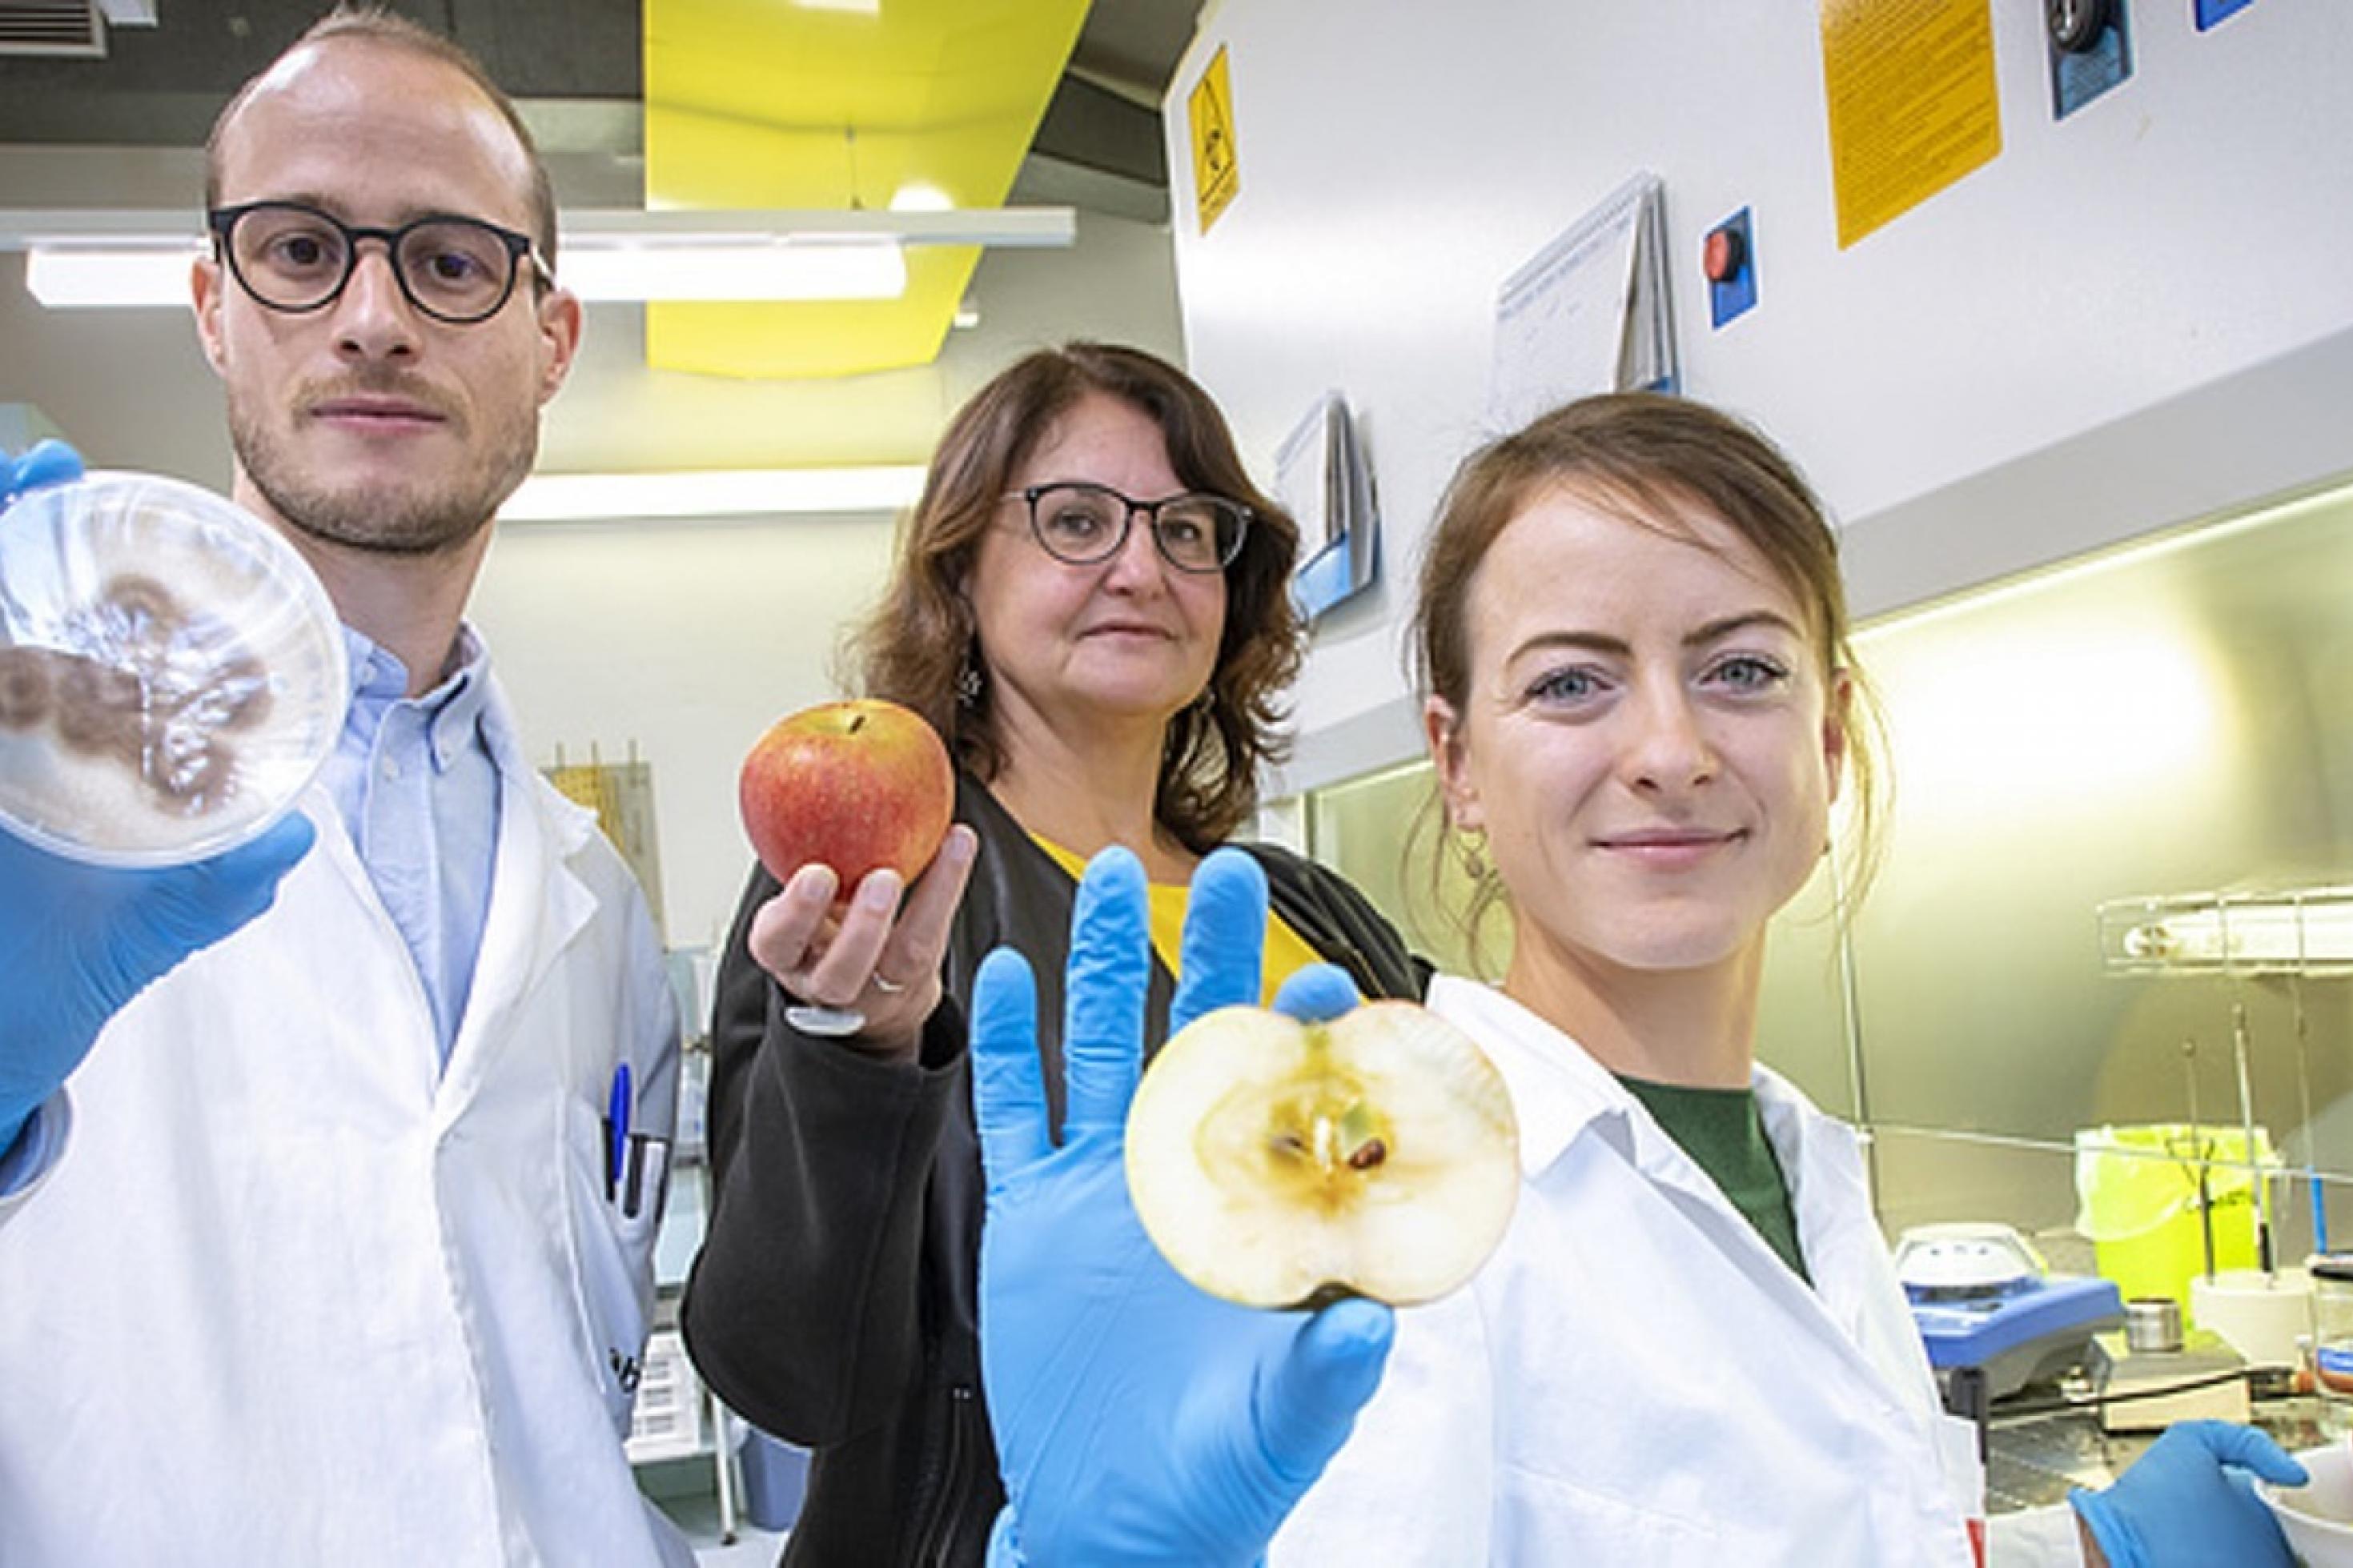 Forscherin Gabriele Berg steht mit zwei Kollegen im Labor. Sie halten einen Apfel in der Hand. Das ist ihr Forschungsobjekt, um die drauf befindlichen Mikroorganismen zu studieren.